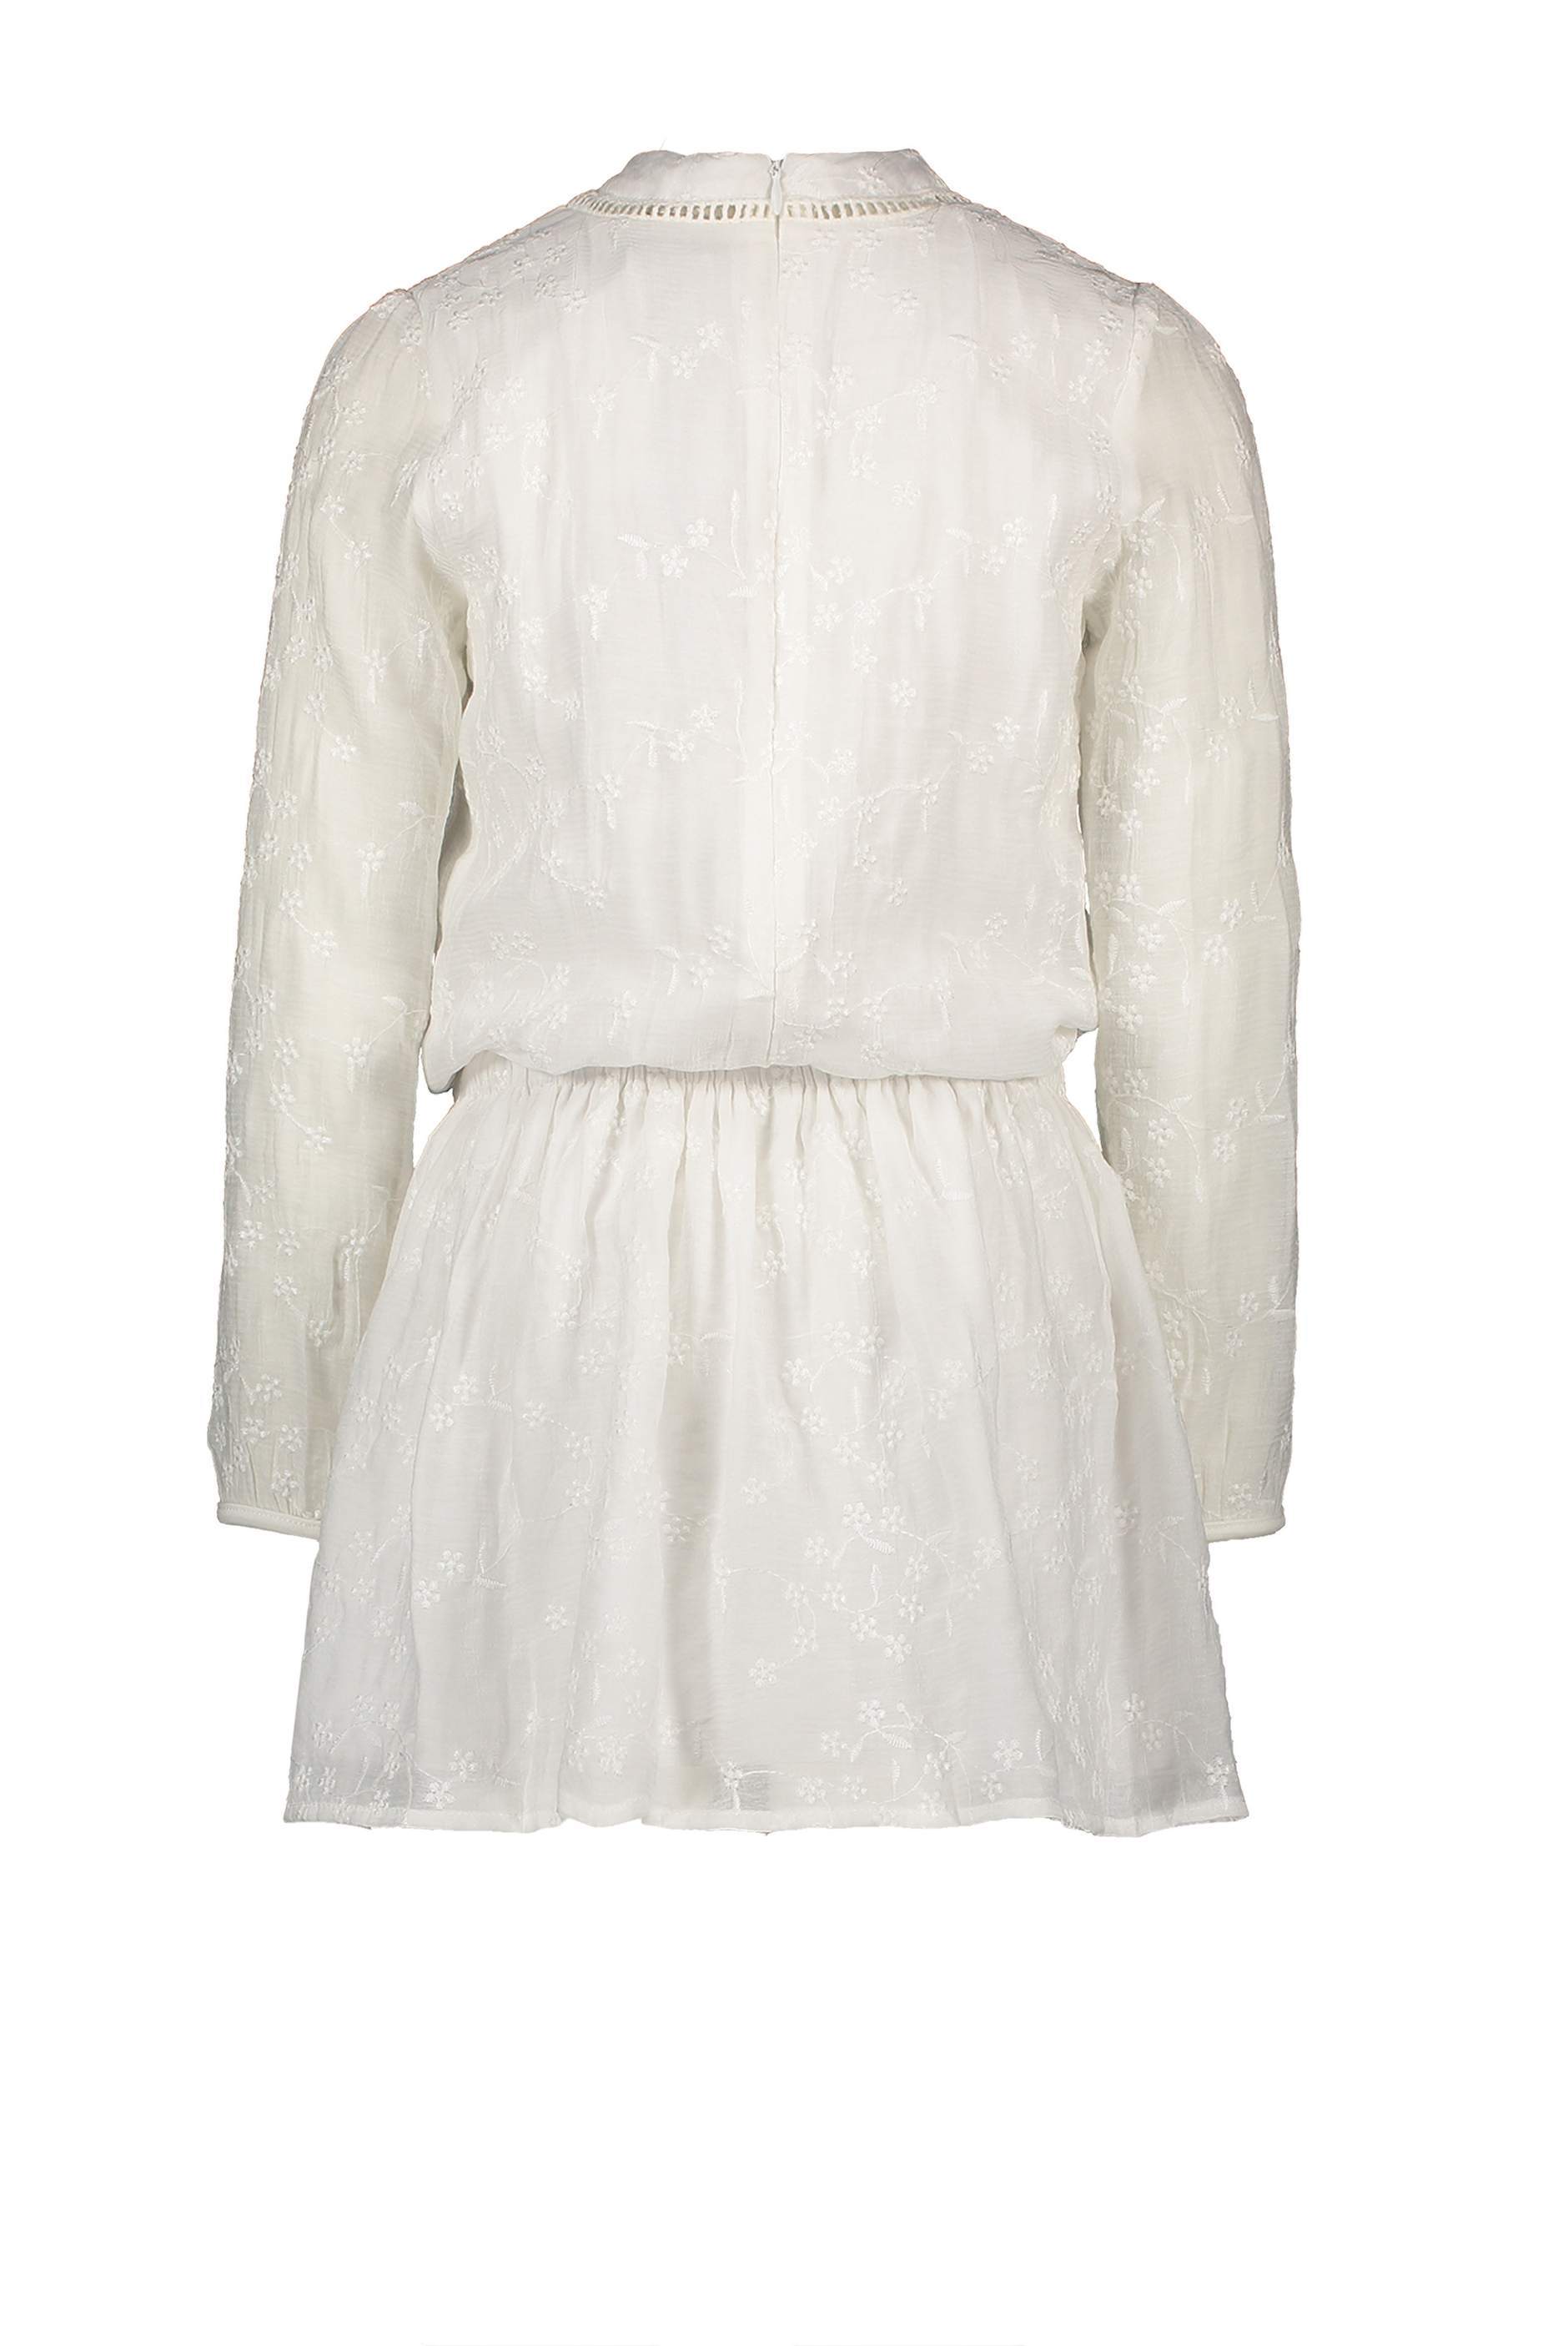 Meisjes MerelB dress l/sl in embroidered cotton van NoNo in de kleur Snow White in maat 146/152.